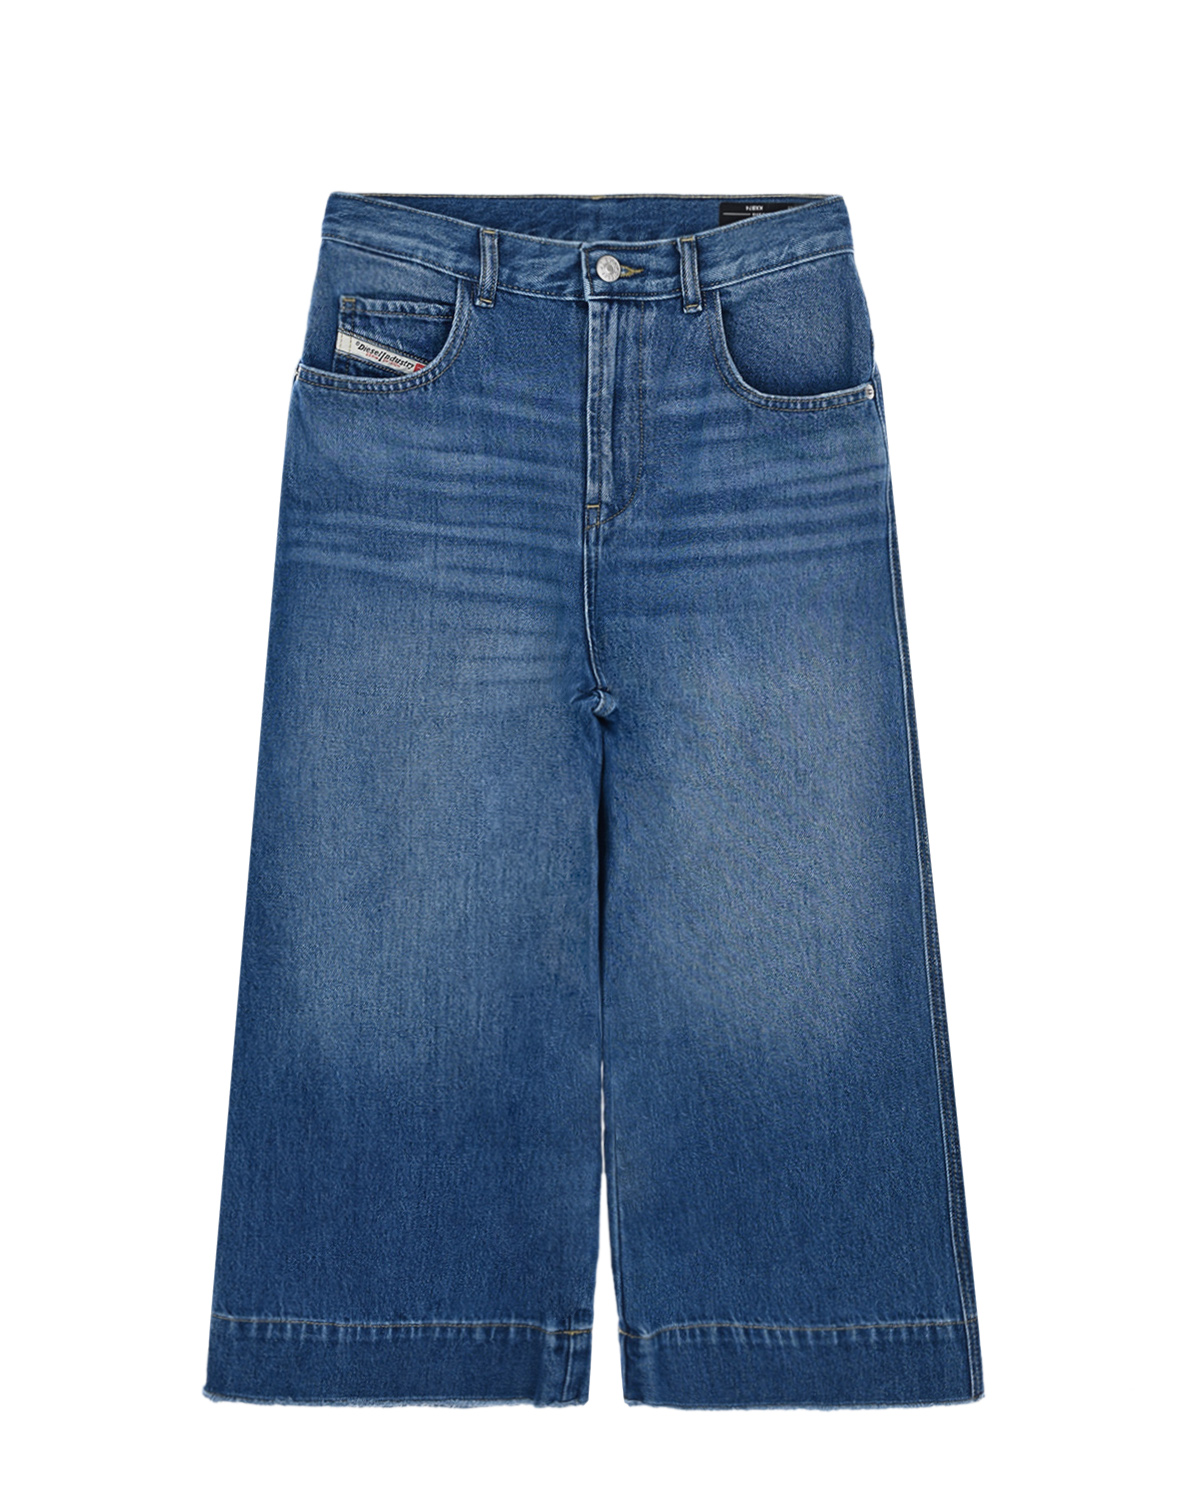 Свободные укороченные джинсы Diesel детские, размер 152, цвет синий - фото 1